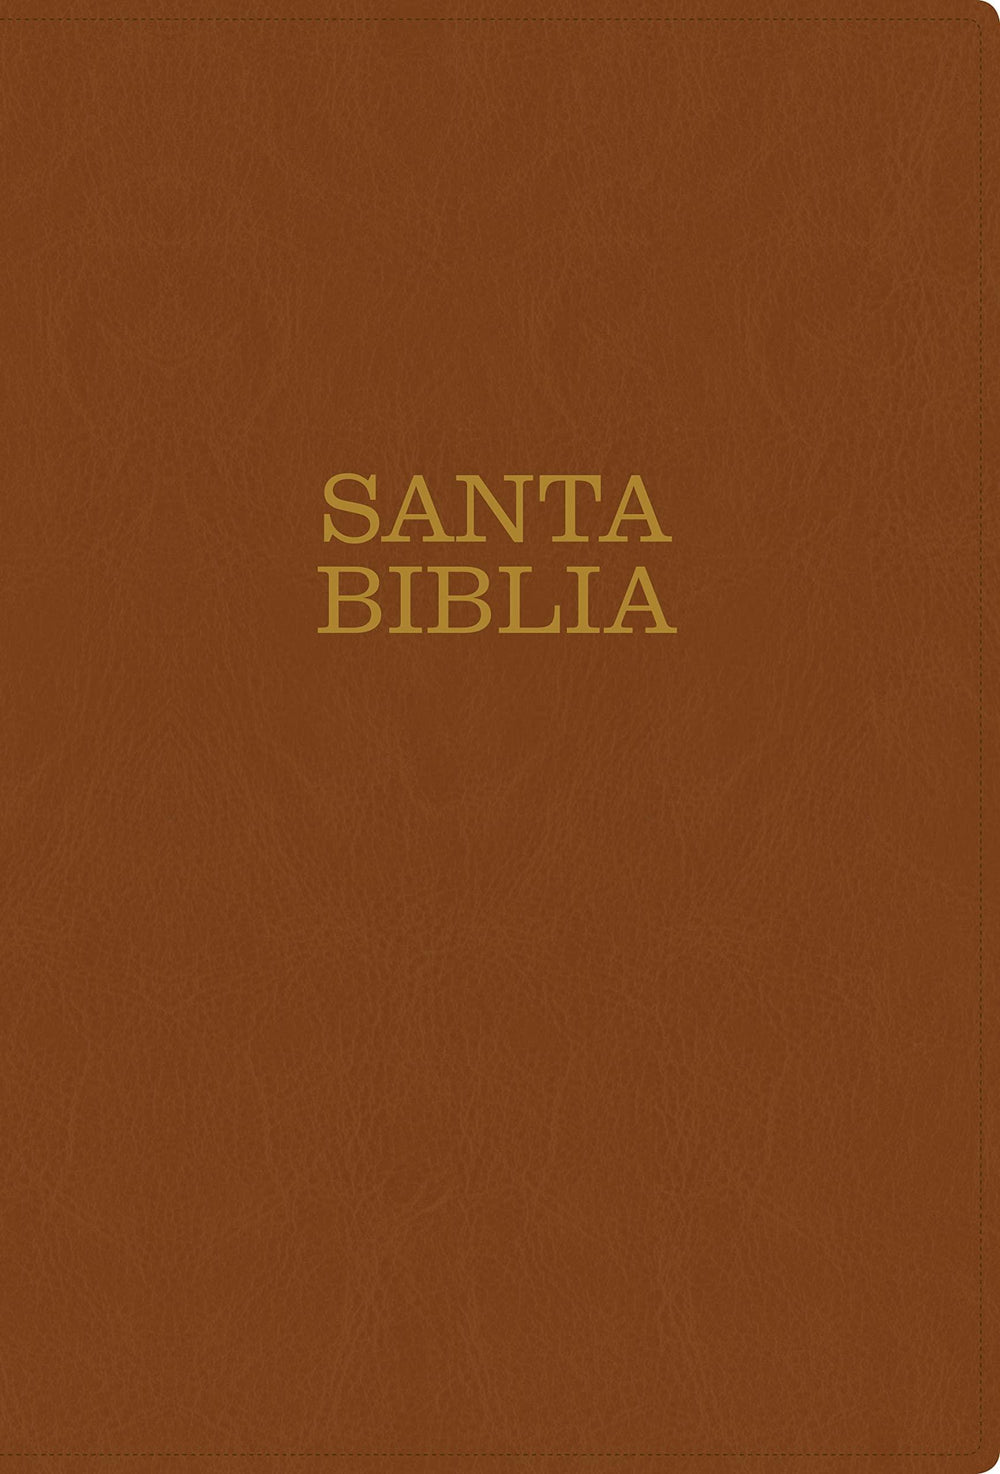 Santa Biblia NTV, letra súper gigante café claro (con índice) - Pura Vida Books